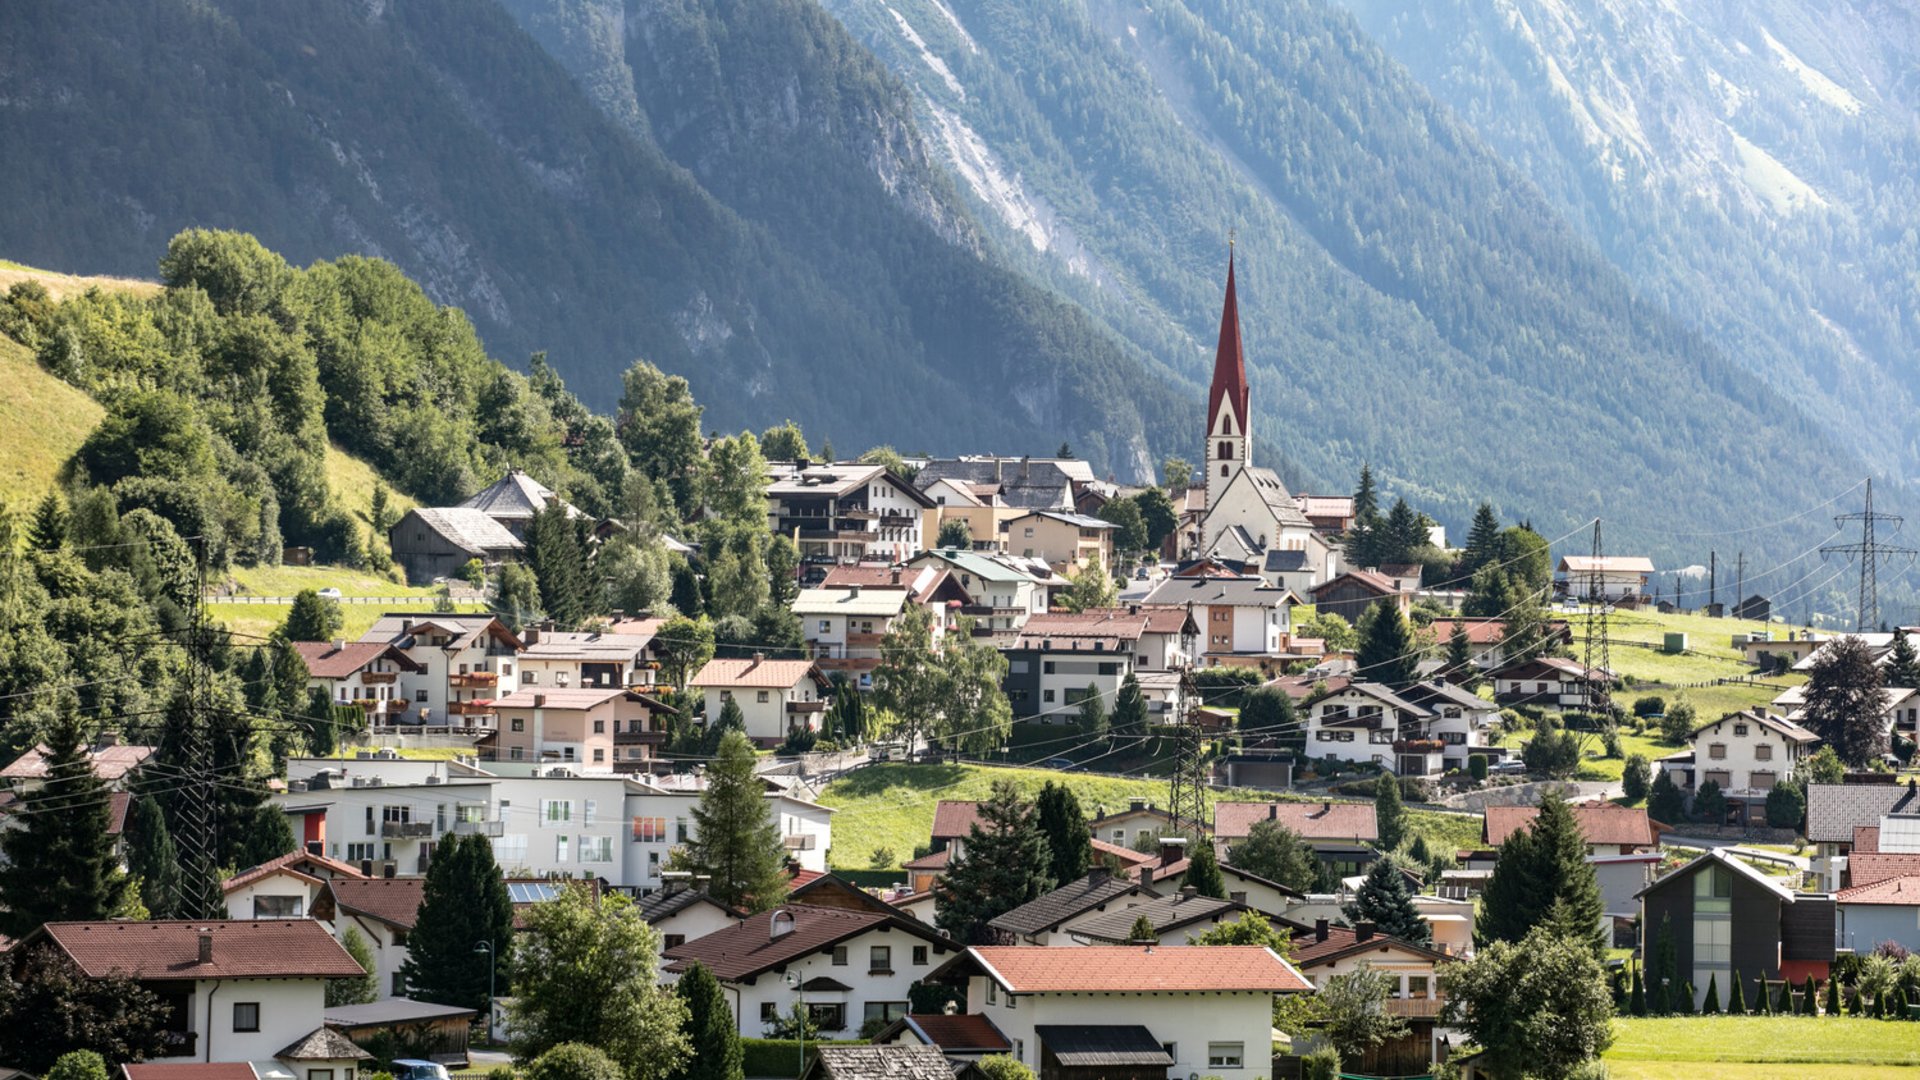 Willkommen am Arlberg: in Ihrem Hotel in St. Anton